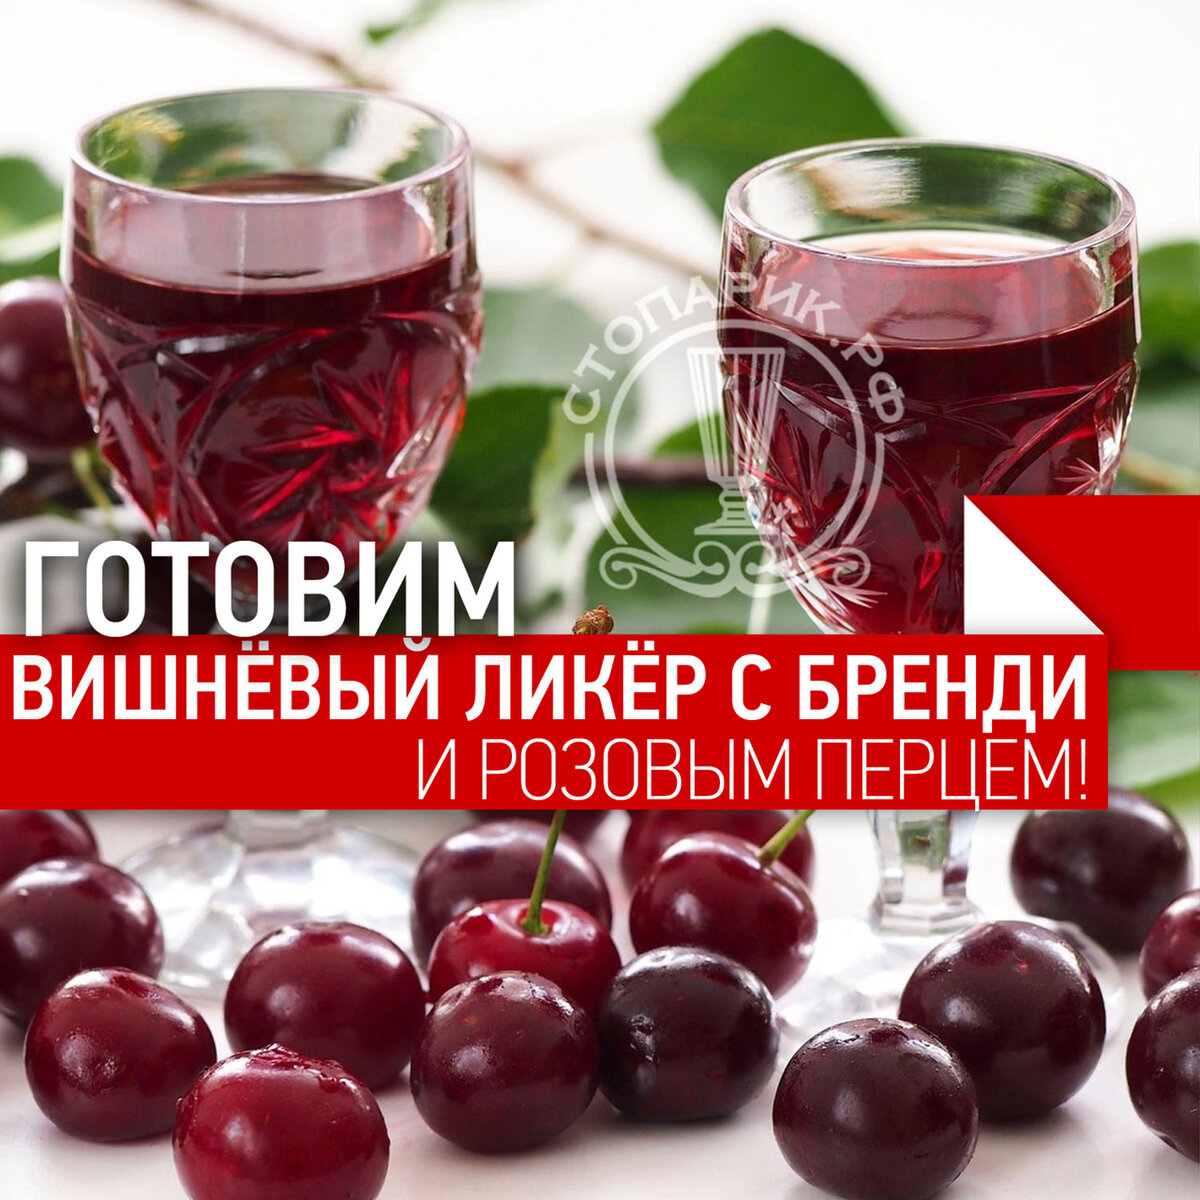 Рецепты вишневого ликера в домашних условиях на водке (спирту, самогоне)